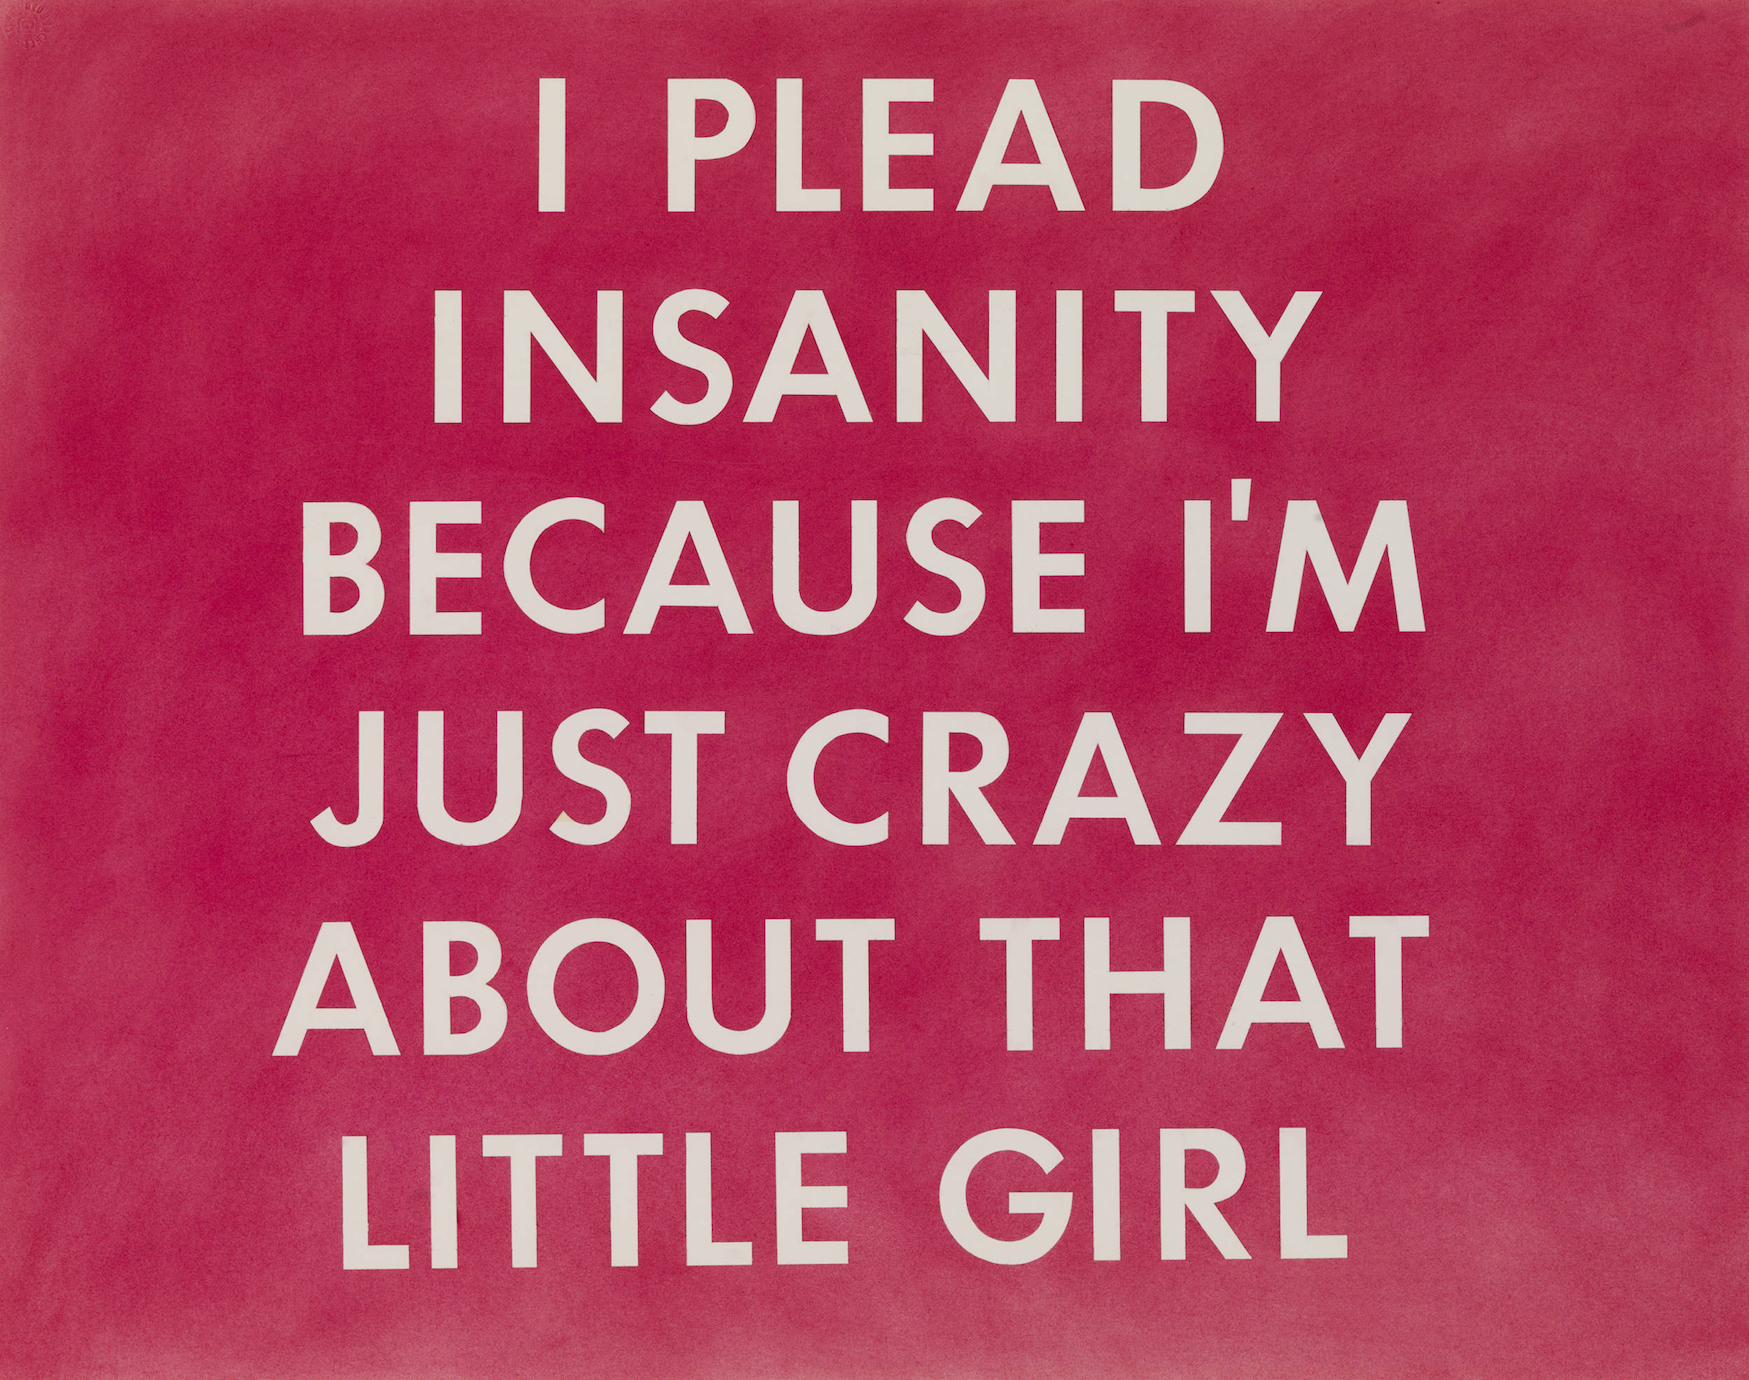 I plead insanity, ed ruscha, 1976